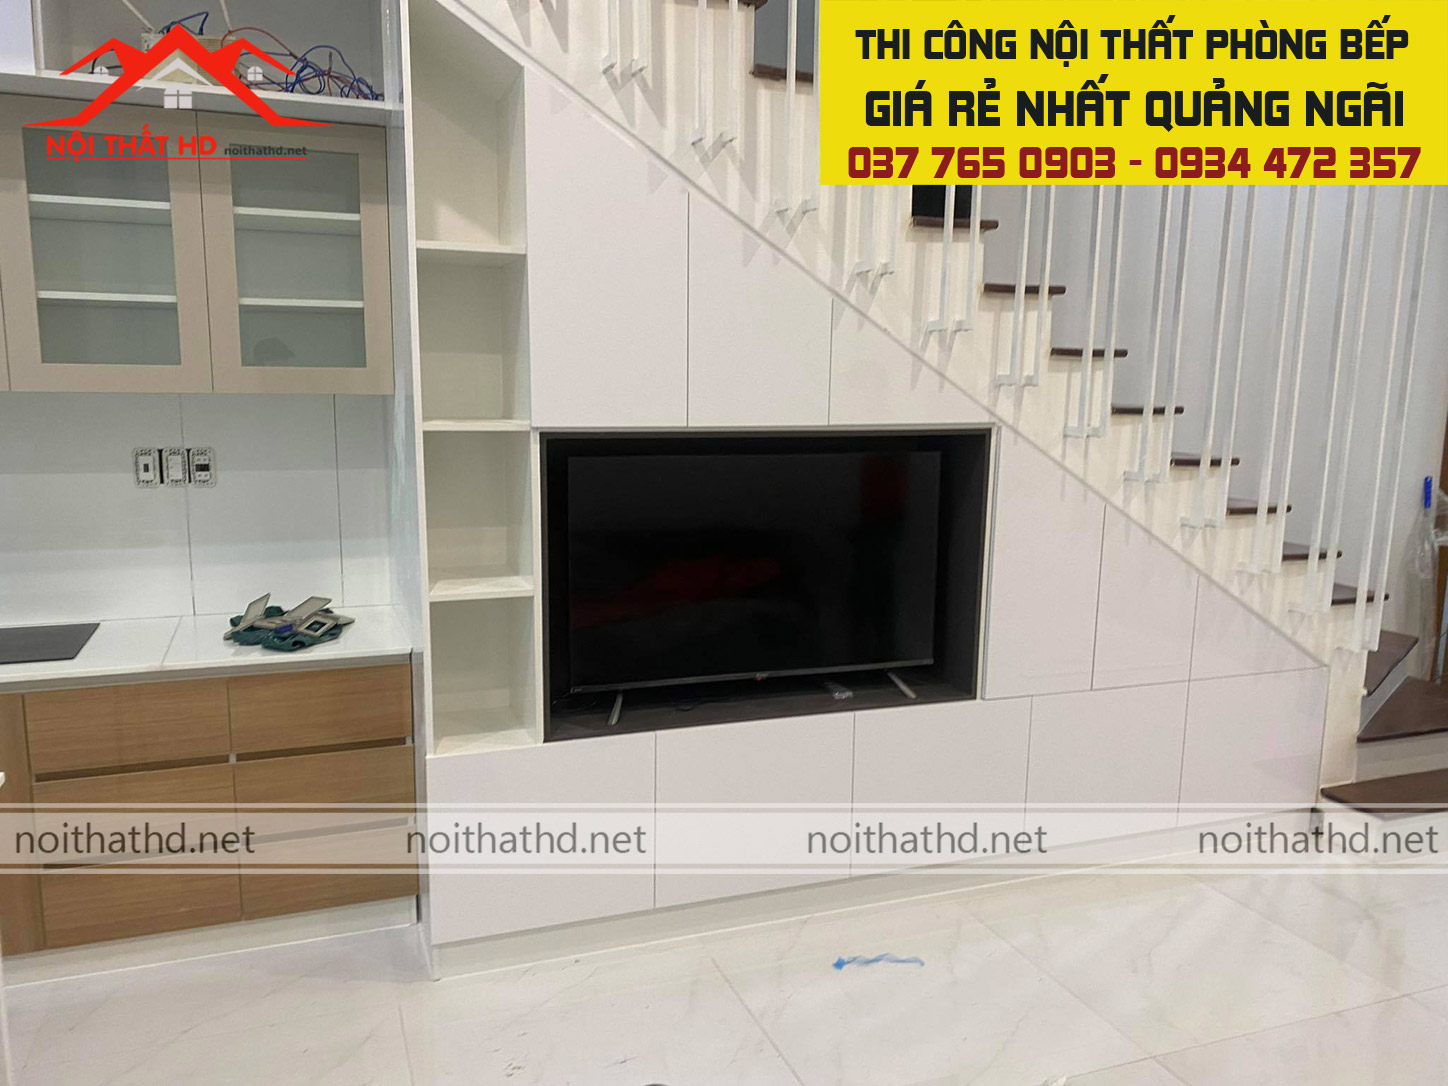 Thi công nội thất phòng bếp kết hợp kệ tivi đẹp giá rẻ tại Mộ Đức - Quảng Ngãi 2021